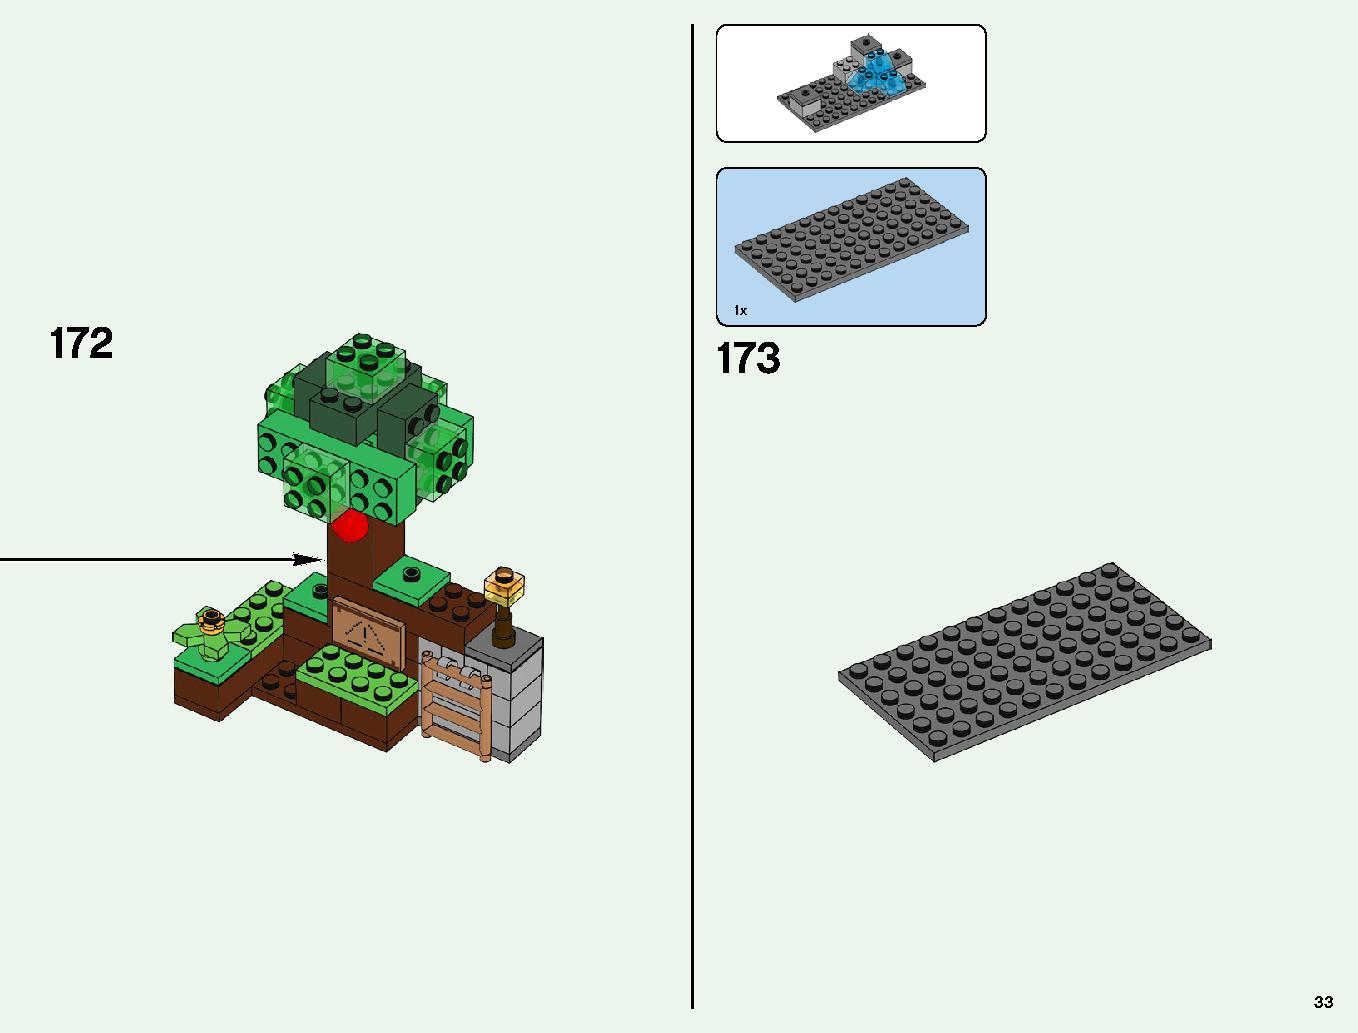 ベッドロックの冒険 21147 レゴの商品情報 レゴの説明書・組立方法 33 page